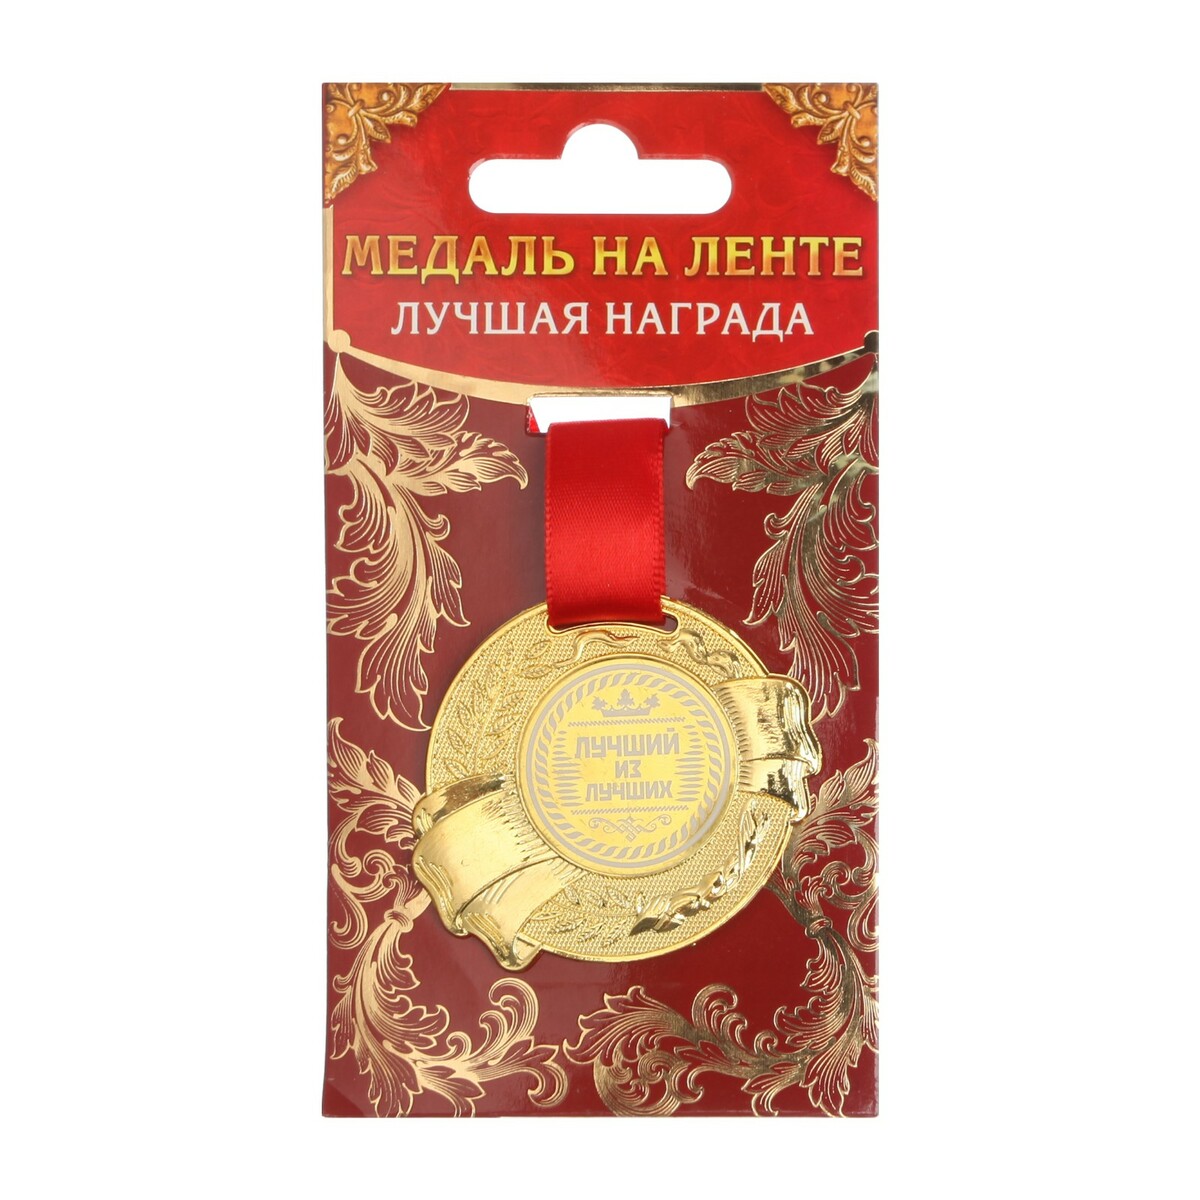 Медаль 250 лучших секретов о теле человека